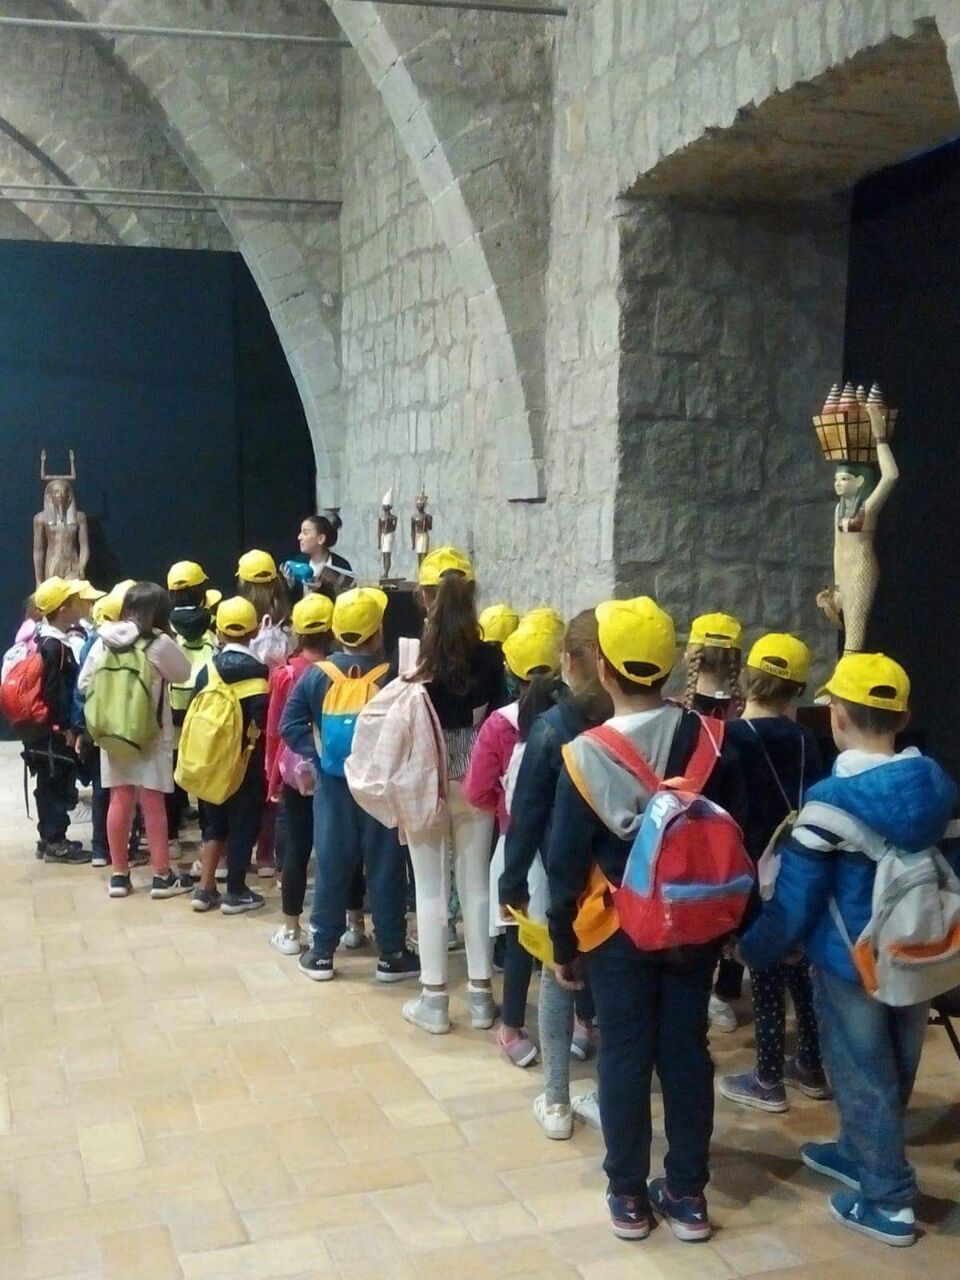 اقبال كثيف على متحف الكنوز المصرية (1)